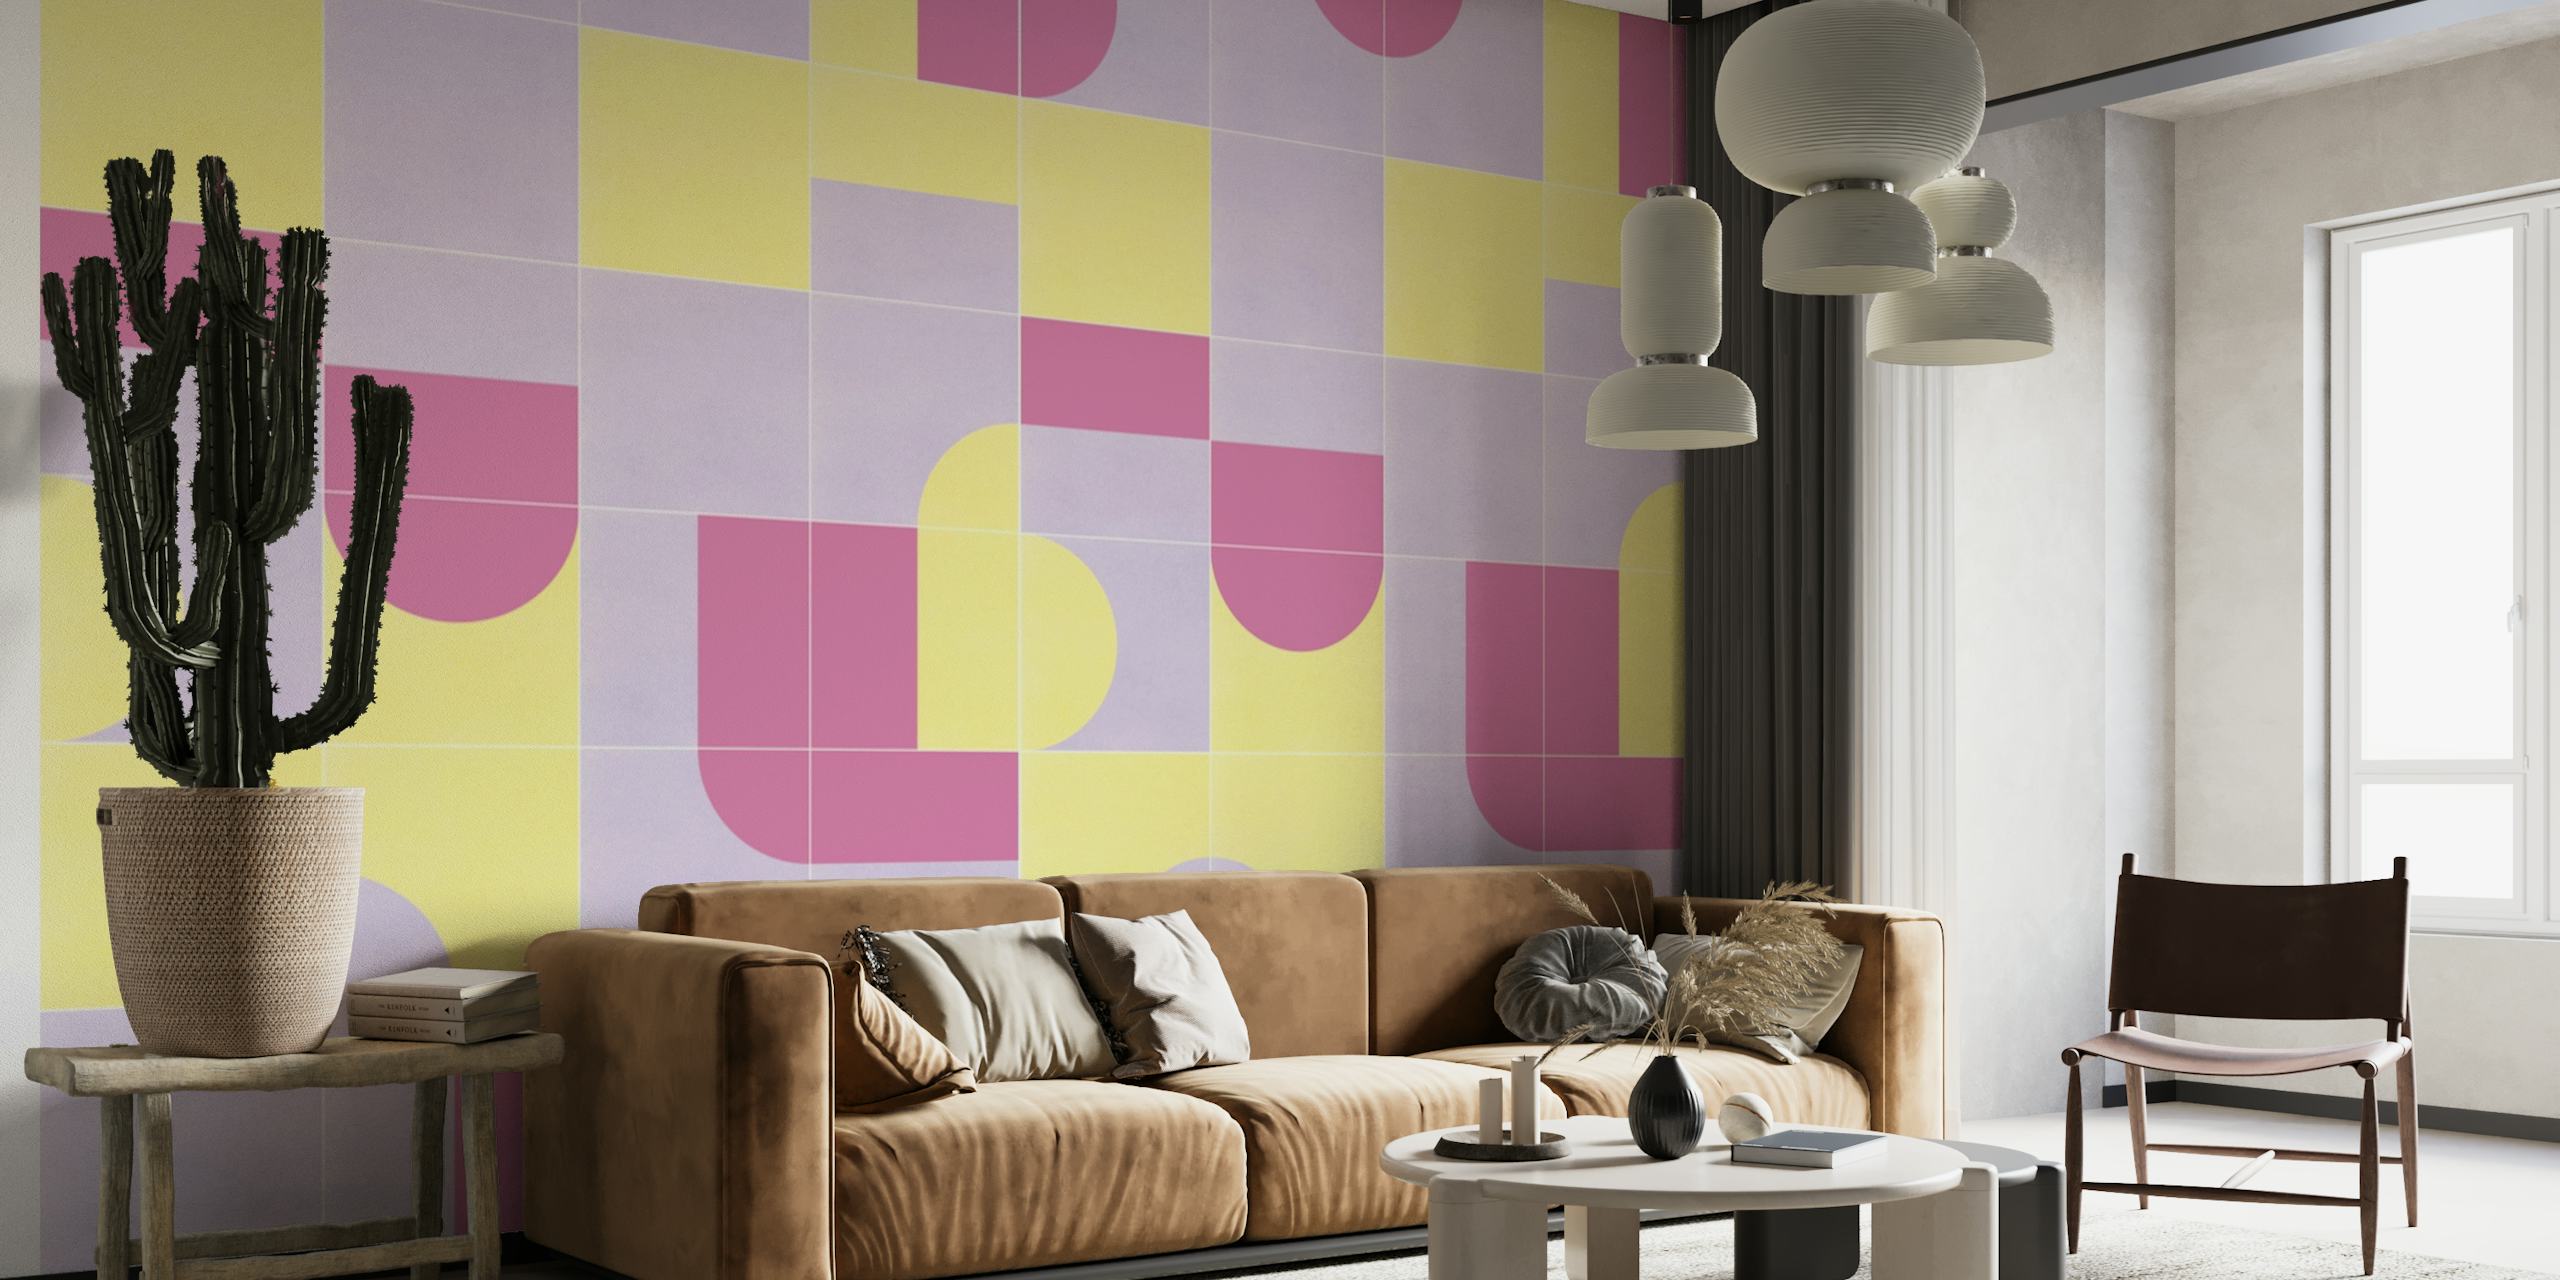 Muurschildering in pastelkleurige geometrische vormen in vintage-stijl